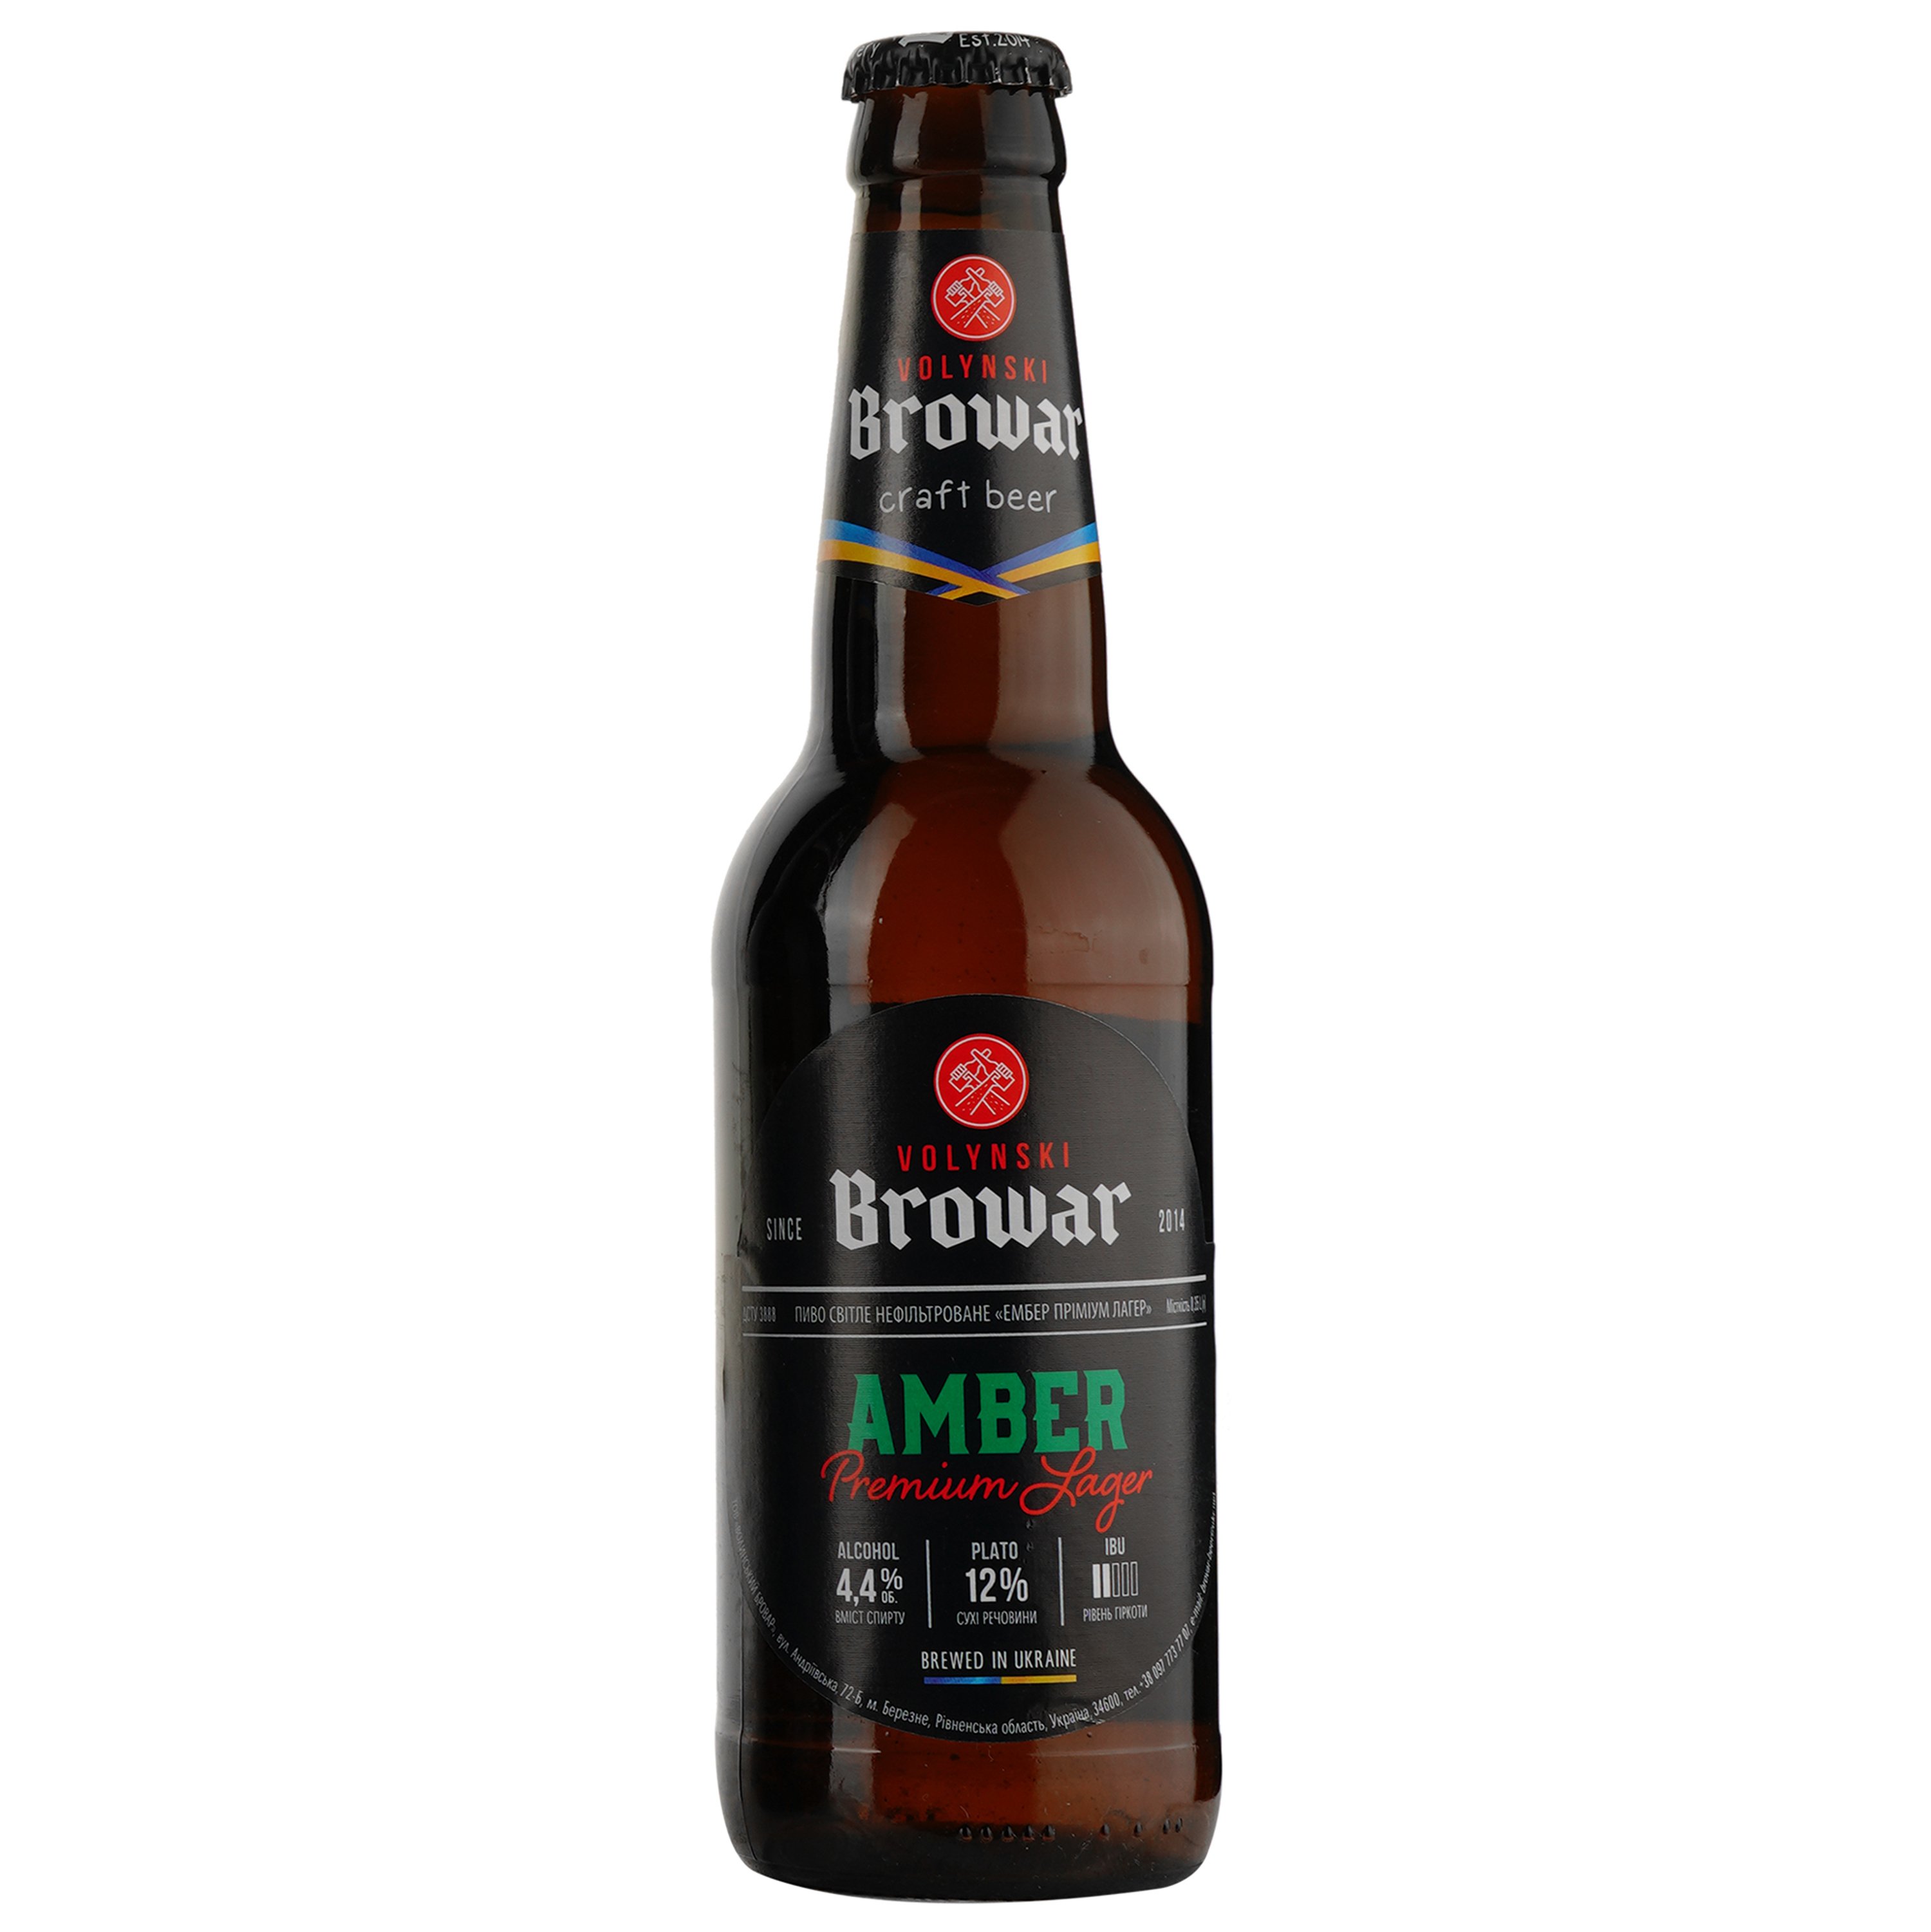 Подарунковий набір пива Volynski Browar, 3,8-5,8%, 1,4 л (4 шт. по 0,35 л) + Келих Somelier, 0,4 л - фото 3